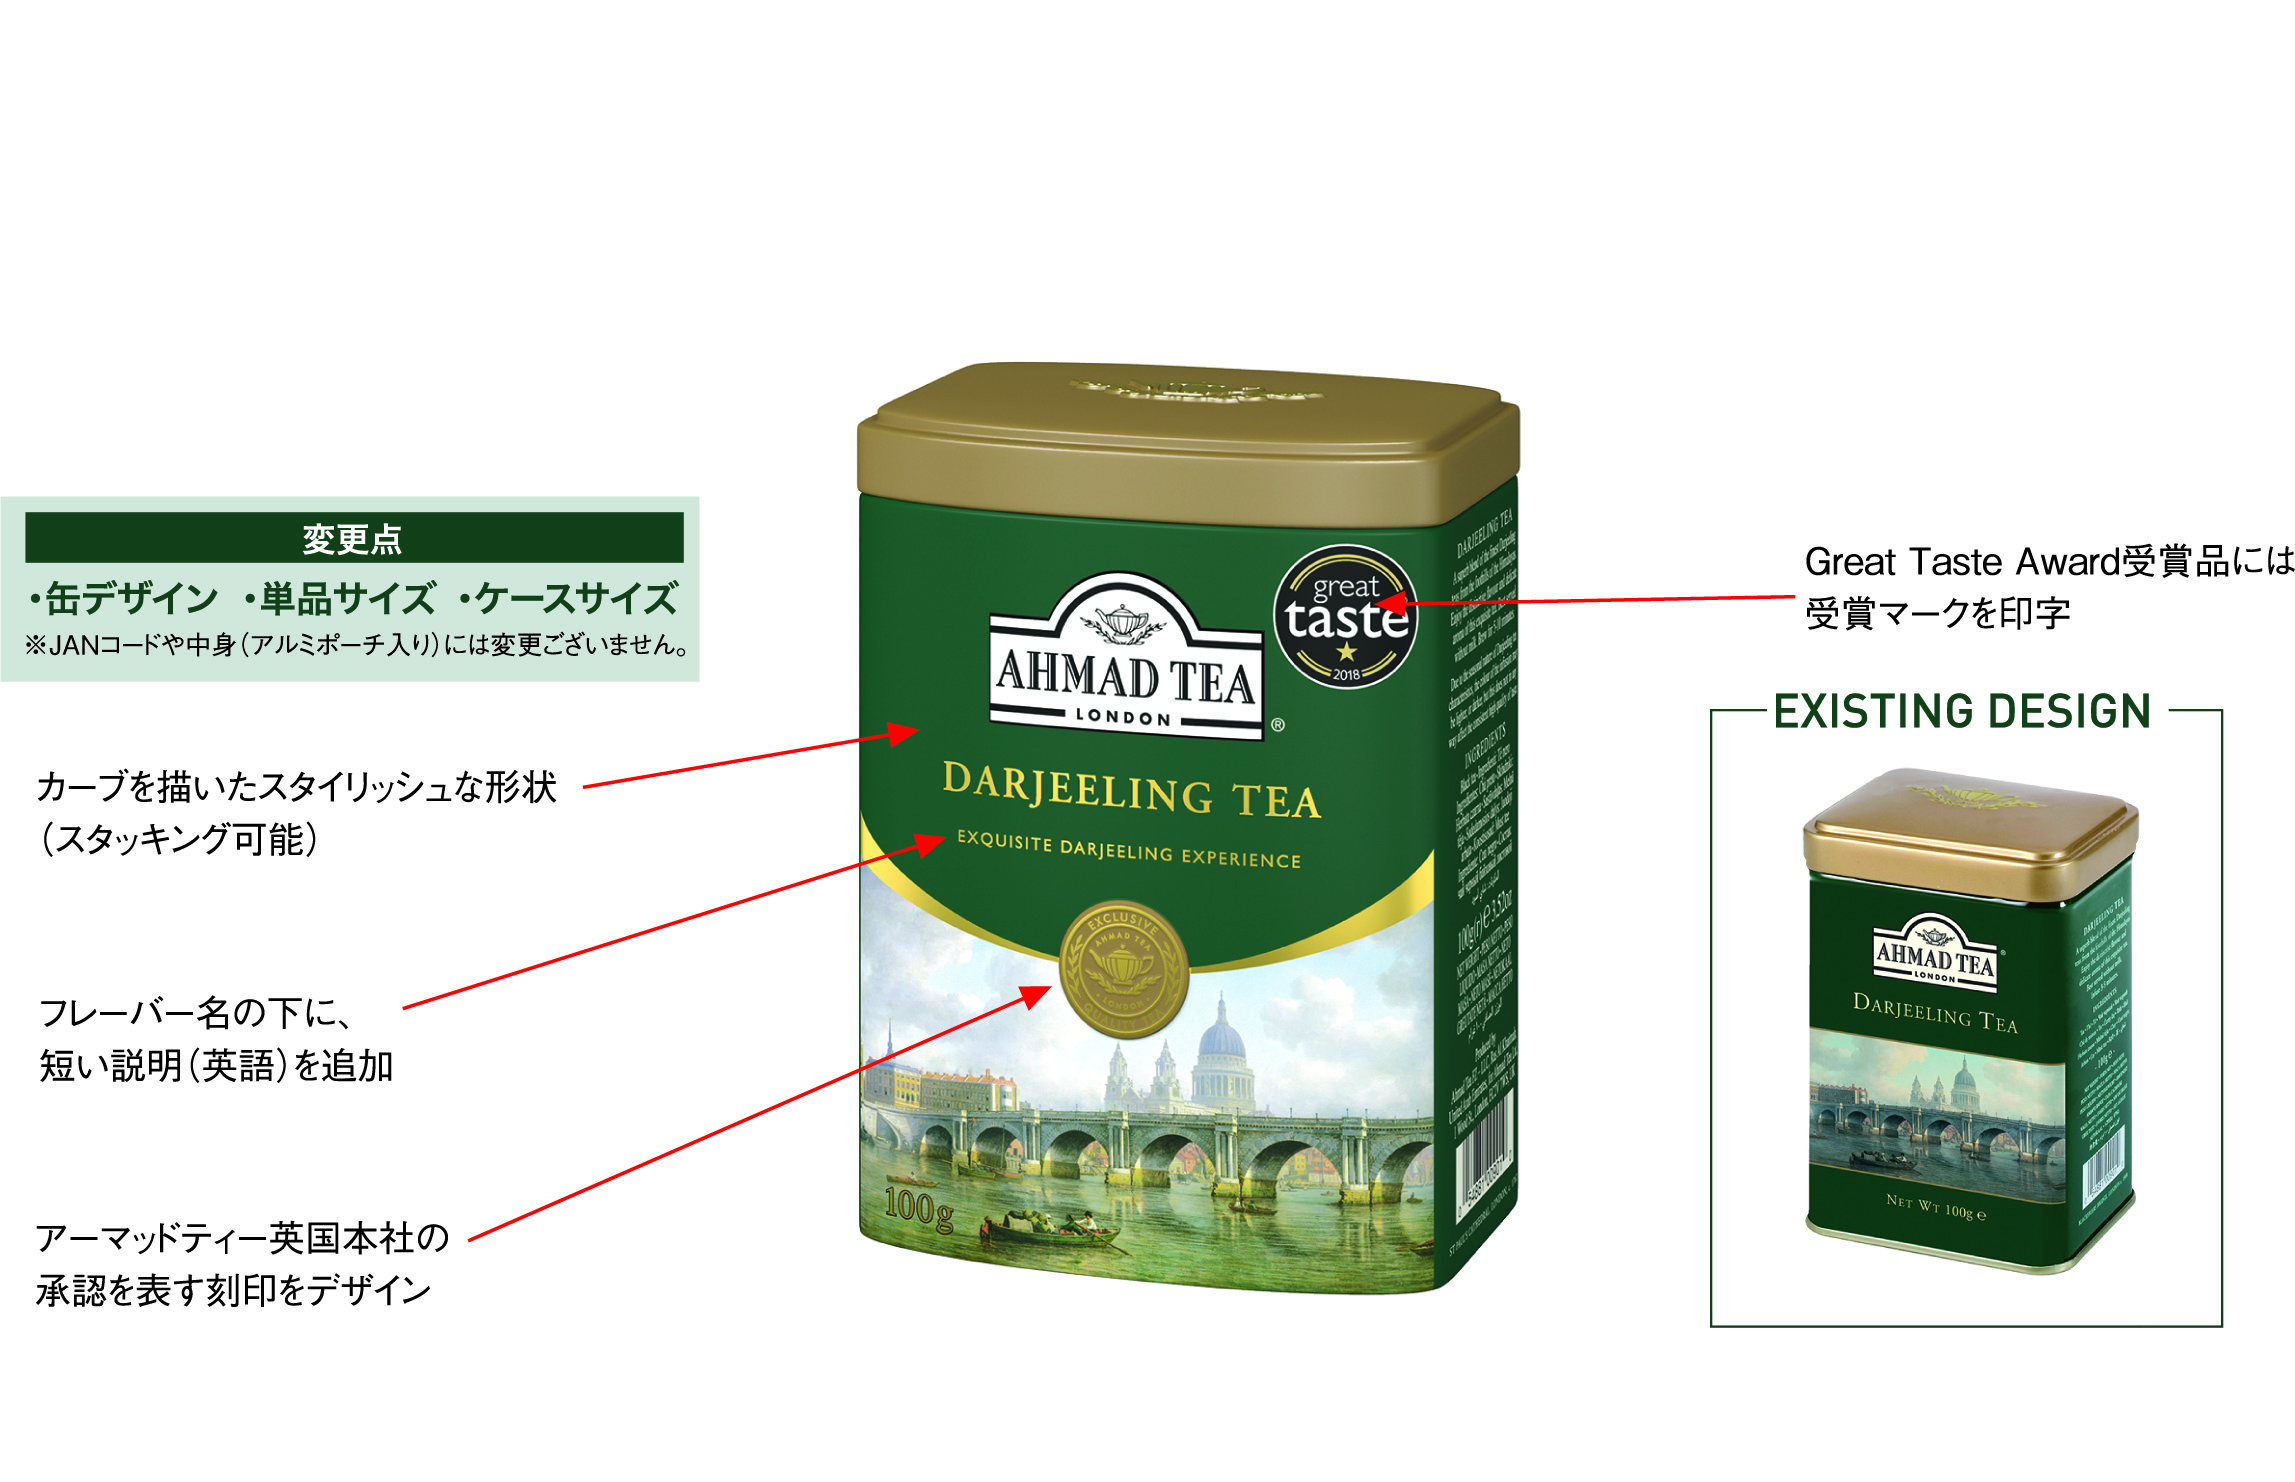 英国紅茶ブランド「AHMAD TEA」リーフティー缶シリーズ 世界 共通で新たなデザインへ-2020年3月より順次リニューアル-｜富永貿易株式会社のプレスリリース